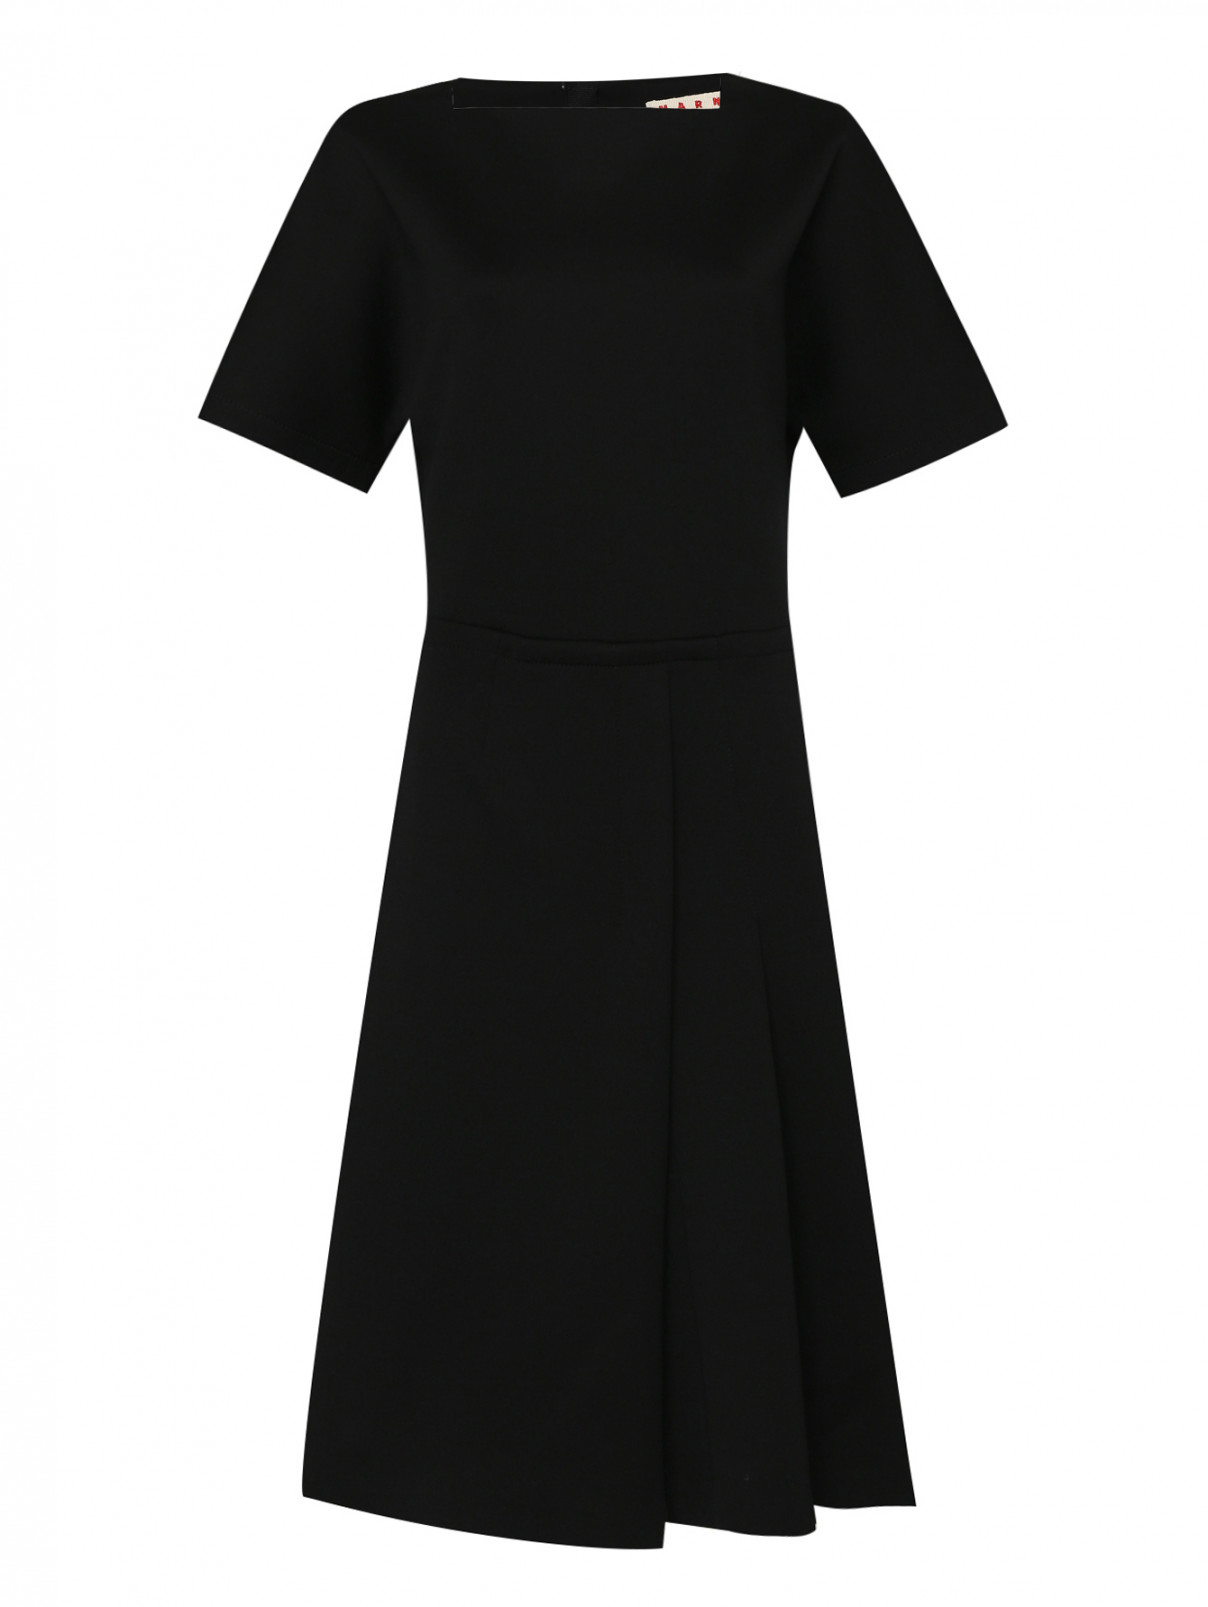 Платье из хлопка с коротким рукавом Marni  –  Общий вид  – Цвет:  Черный